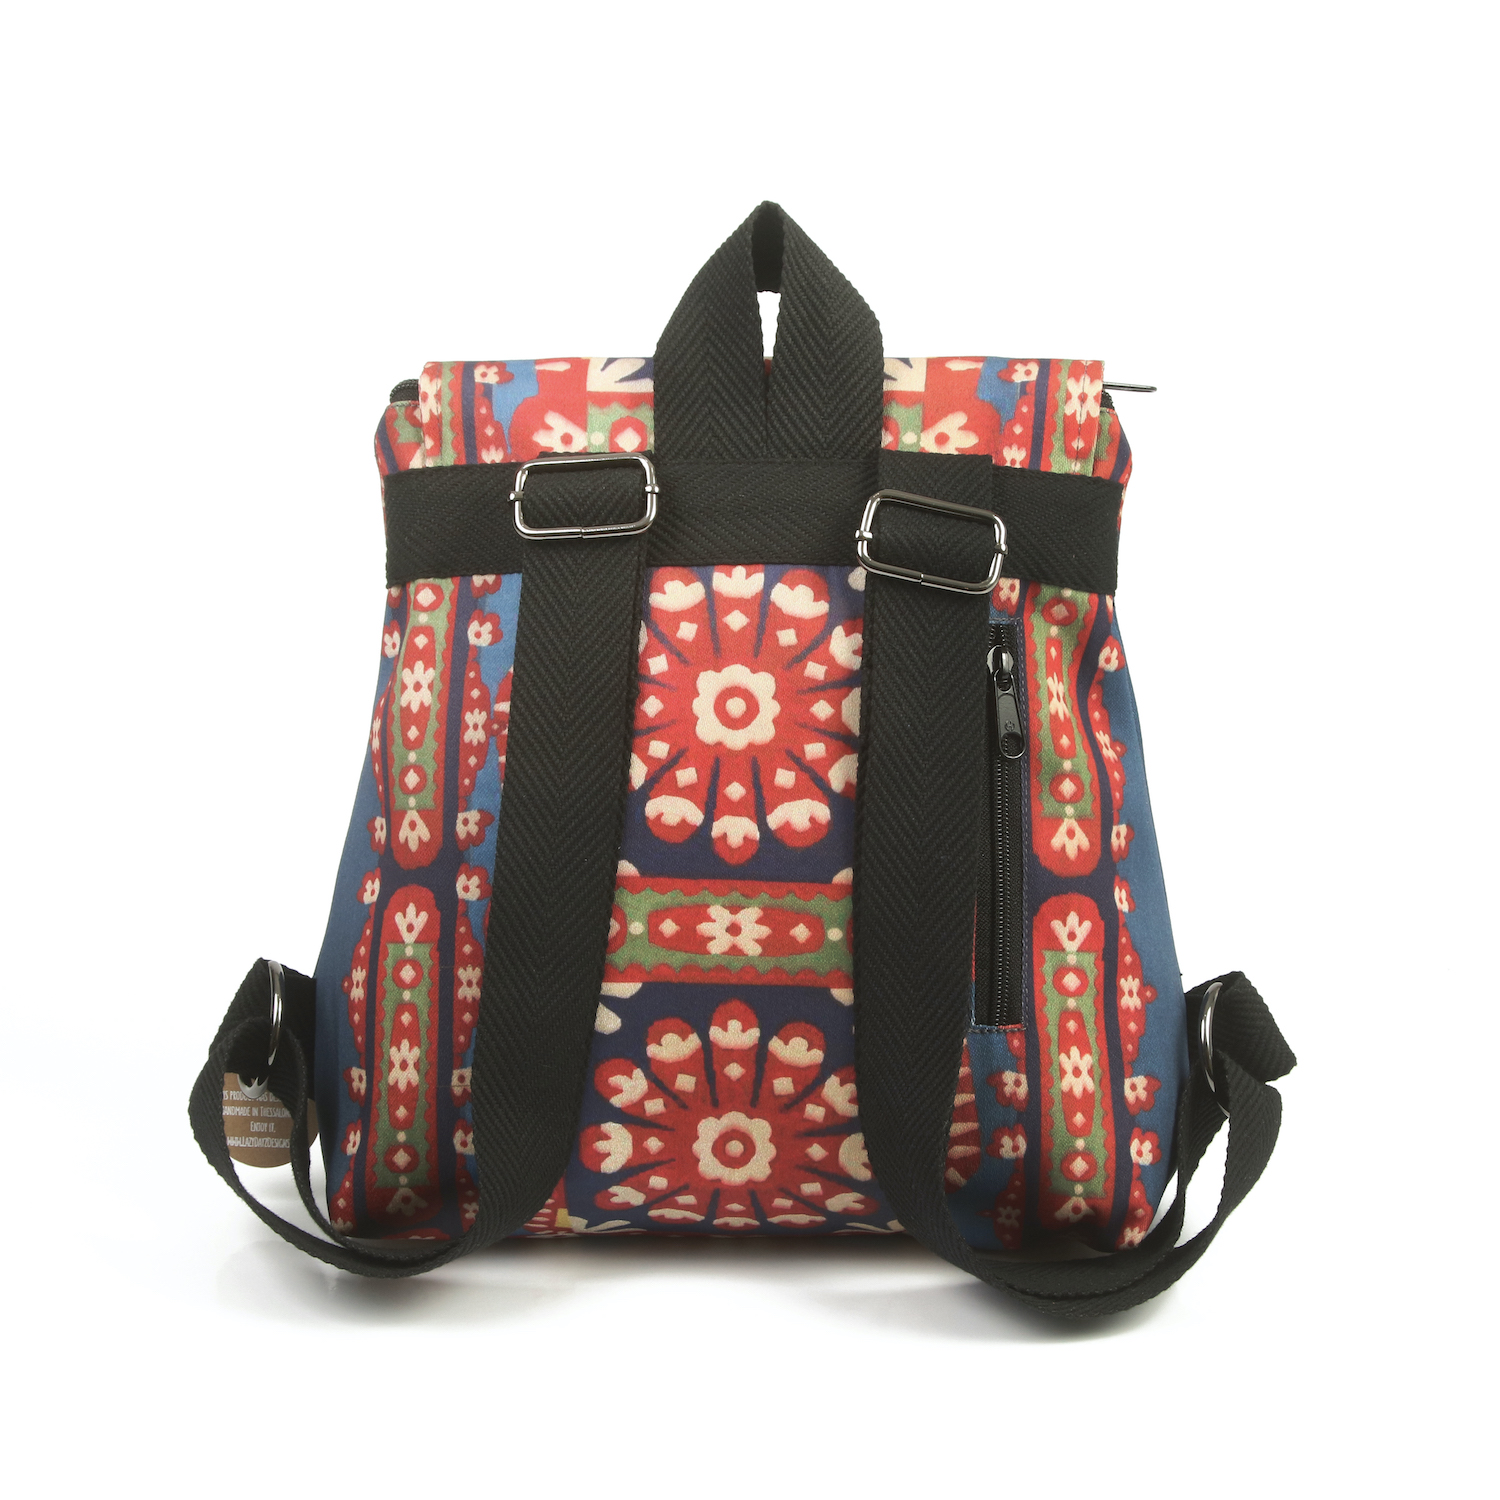 LazyDayz Designs Backpack γυναικείος σάκος πλάτης χειροποίητος bb0307c